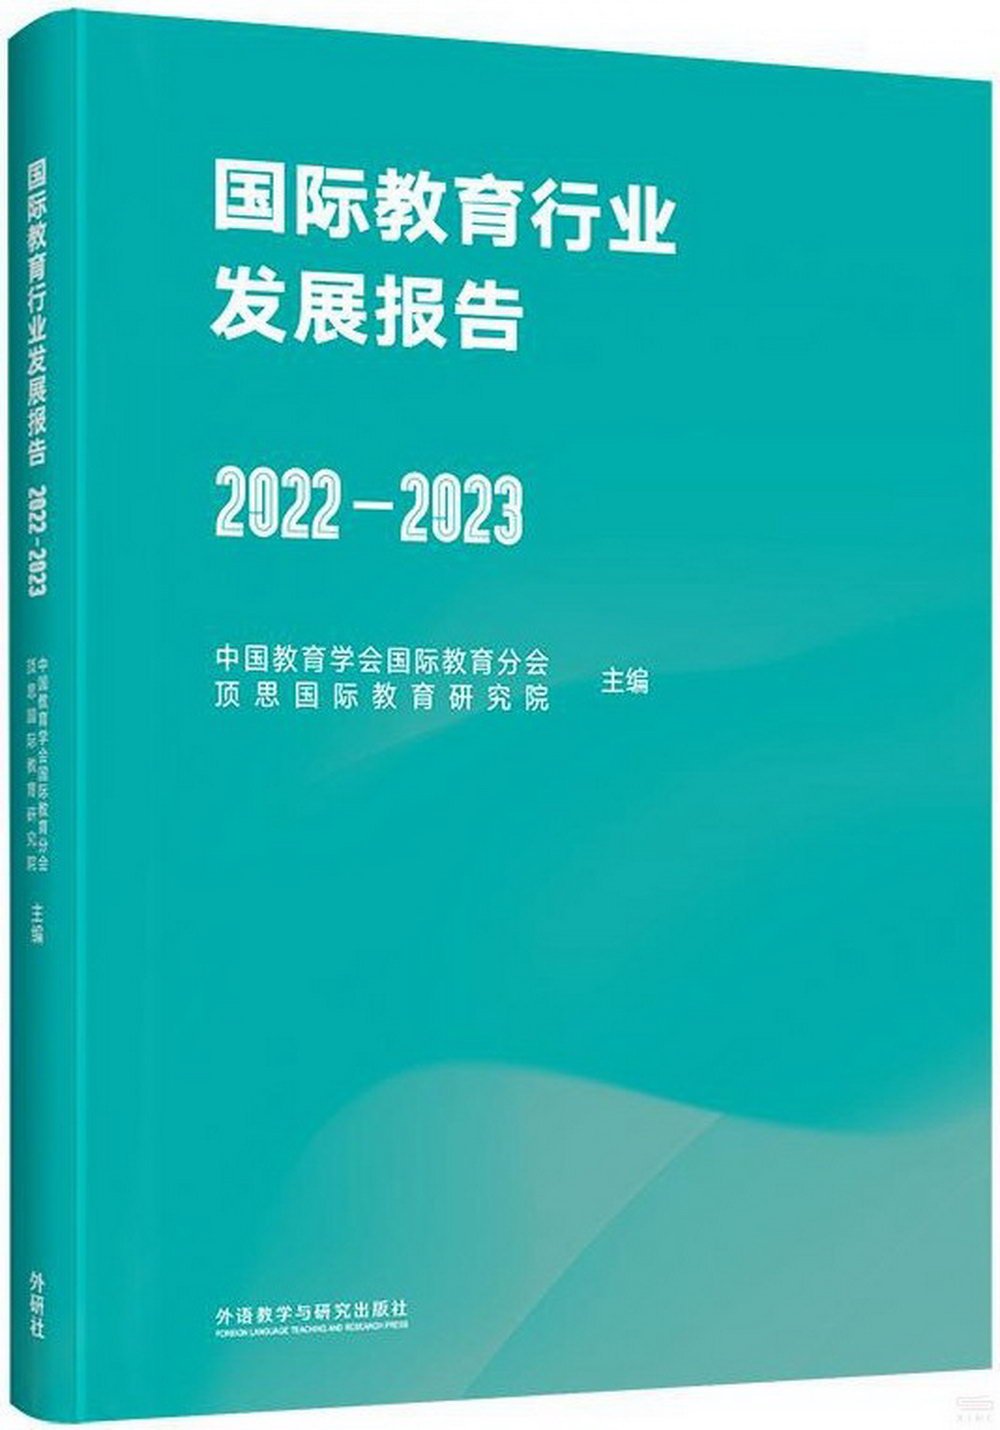 國際教育行業發展報告（2022-2023）